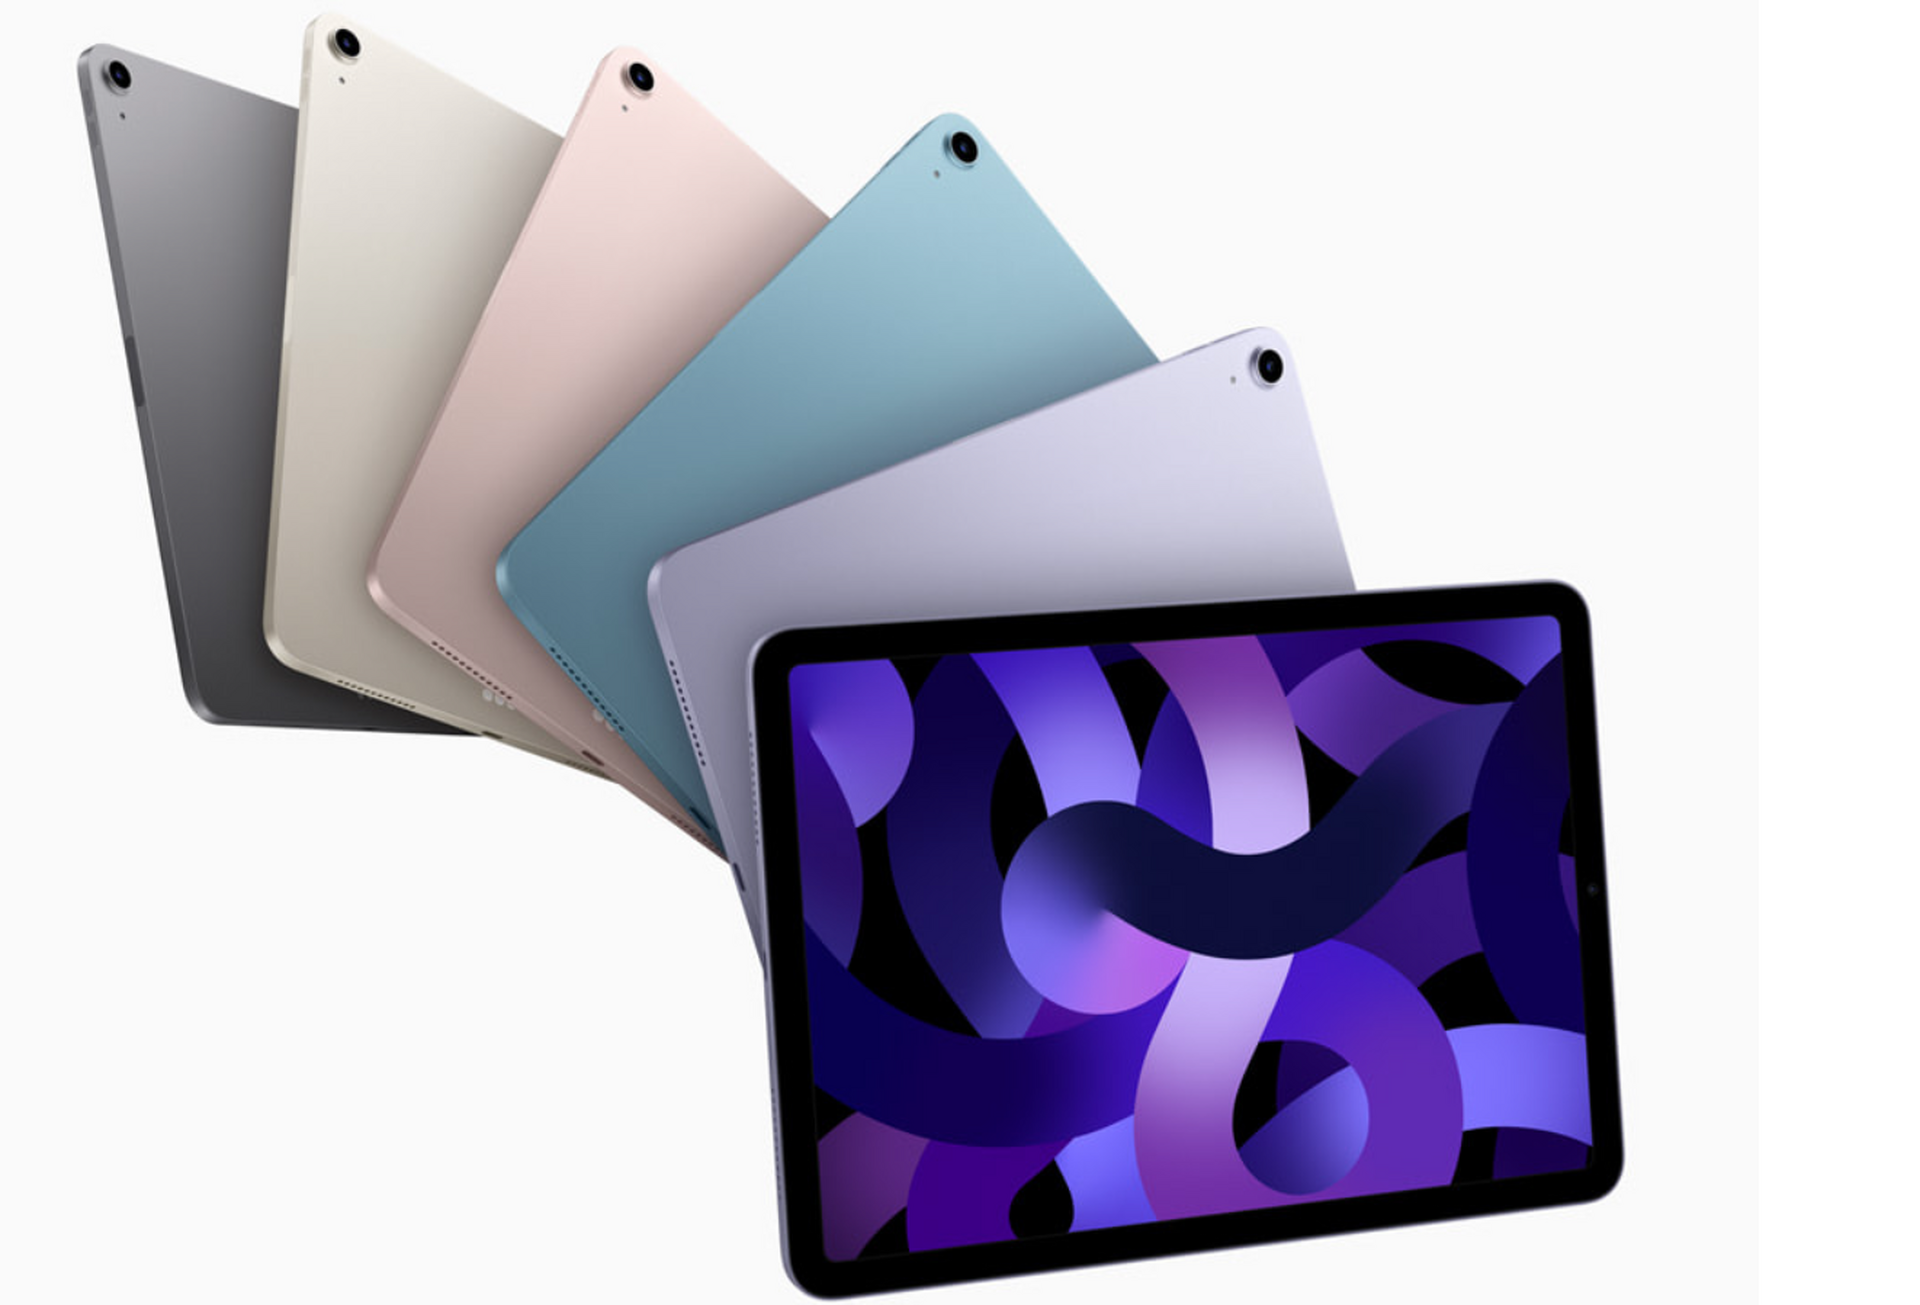 アップル、iPadラインアップを分かりやすく整理予定か。12.9インチiPad